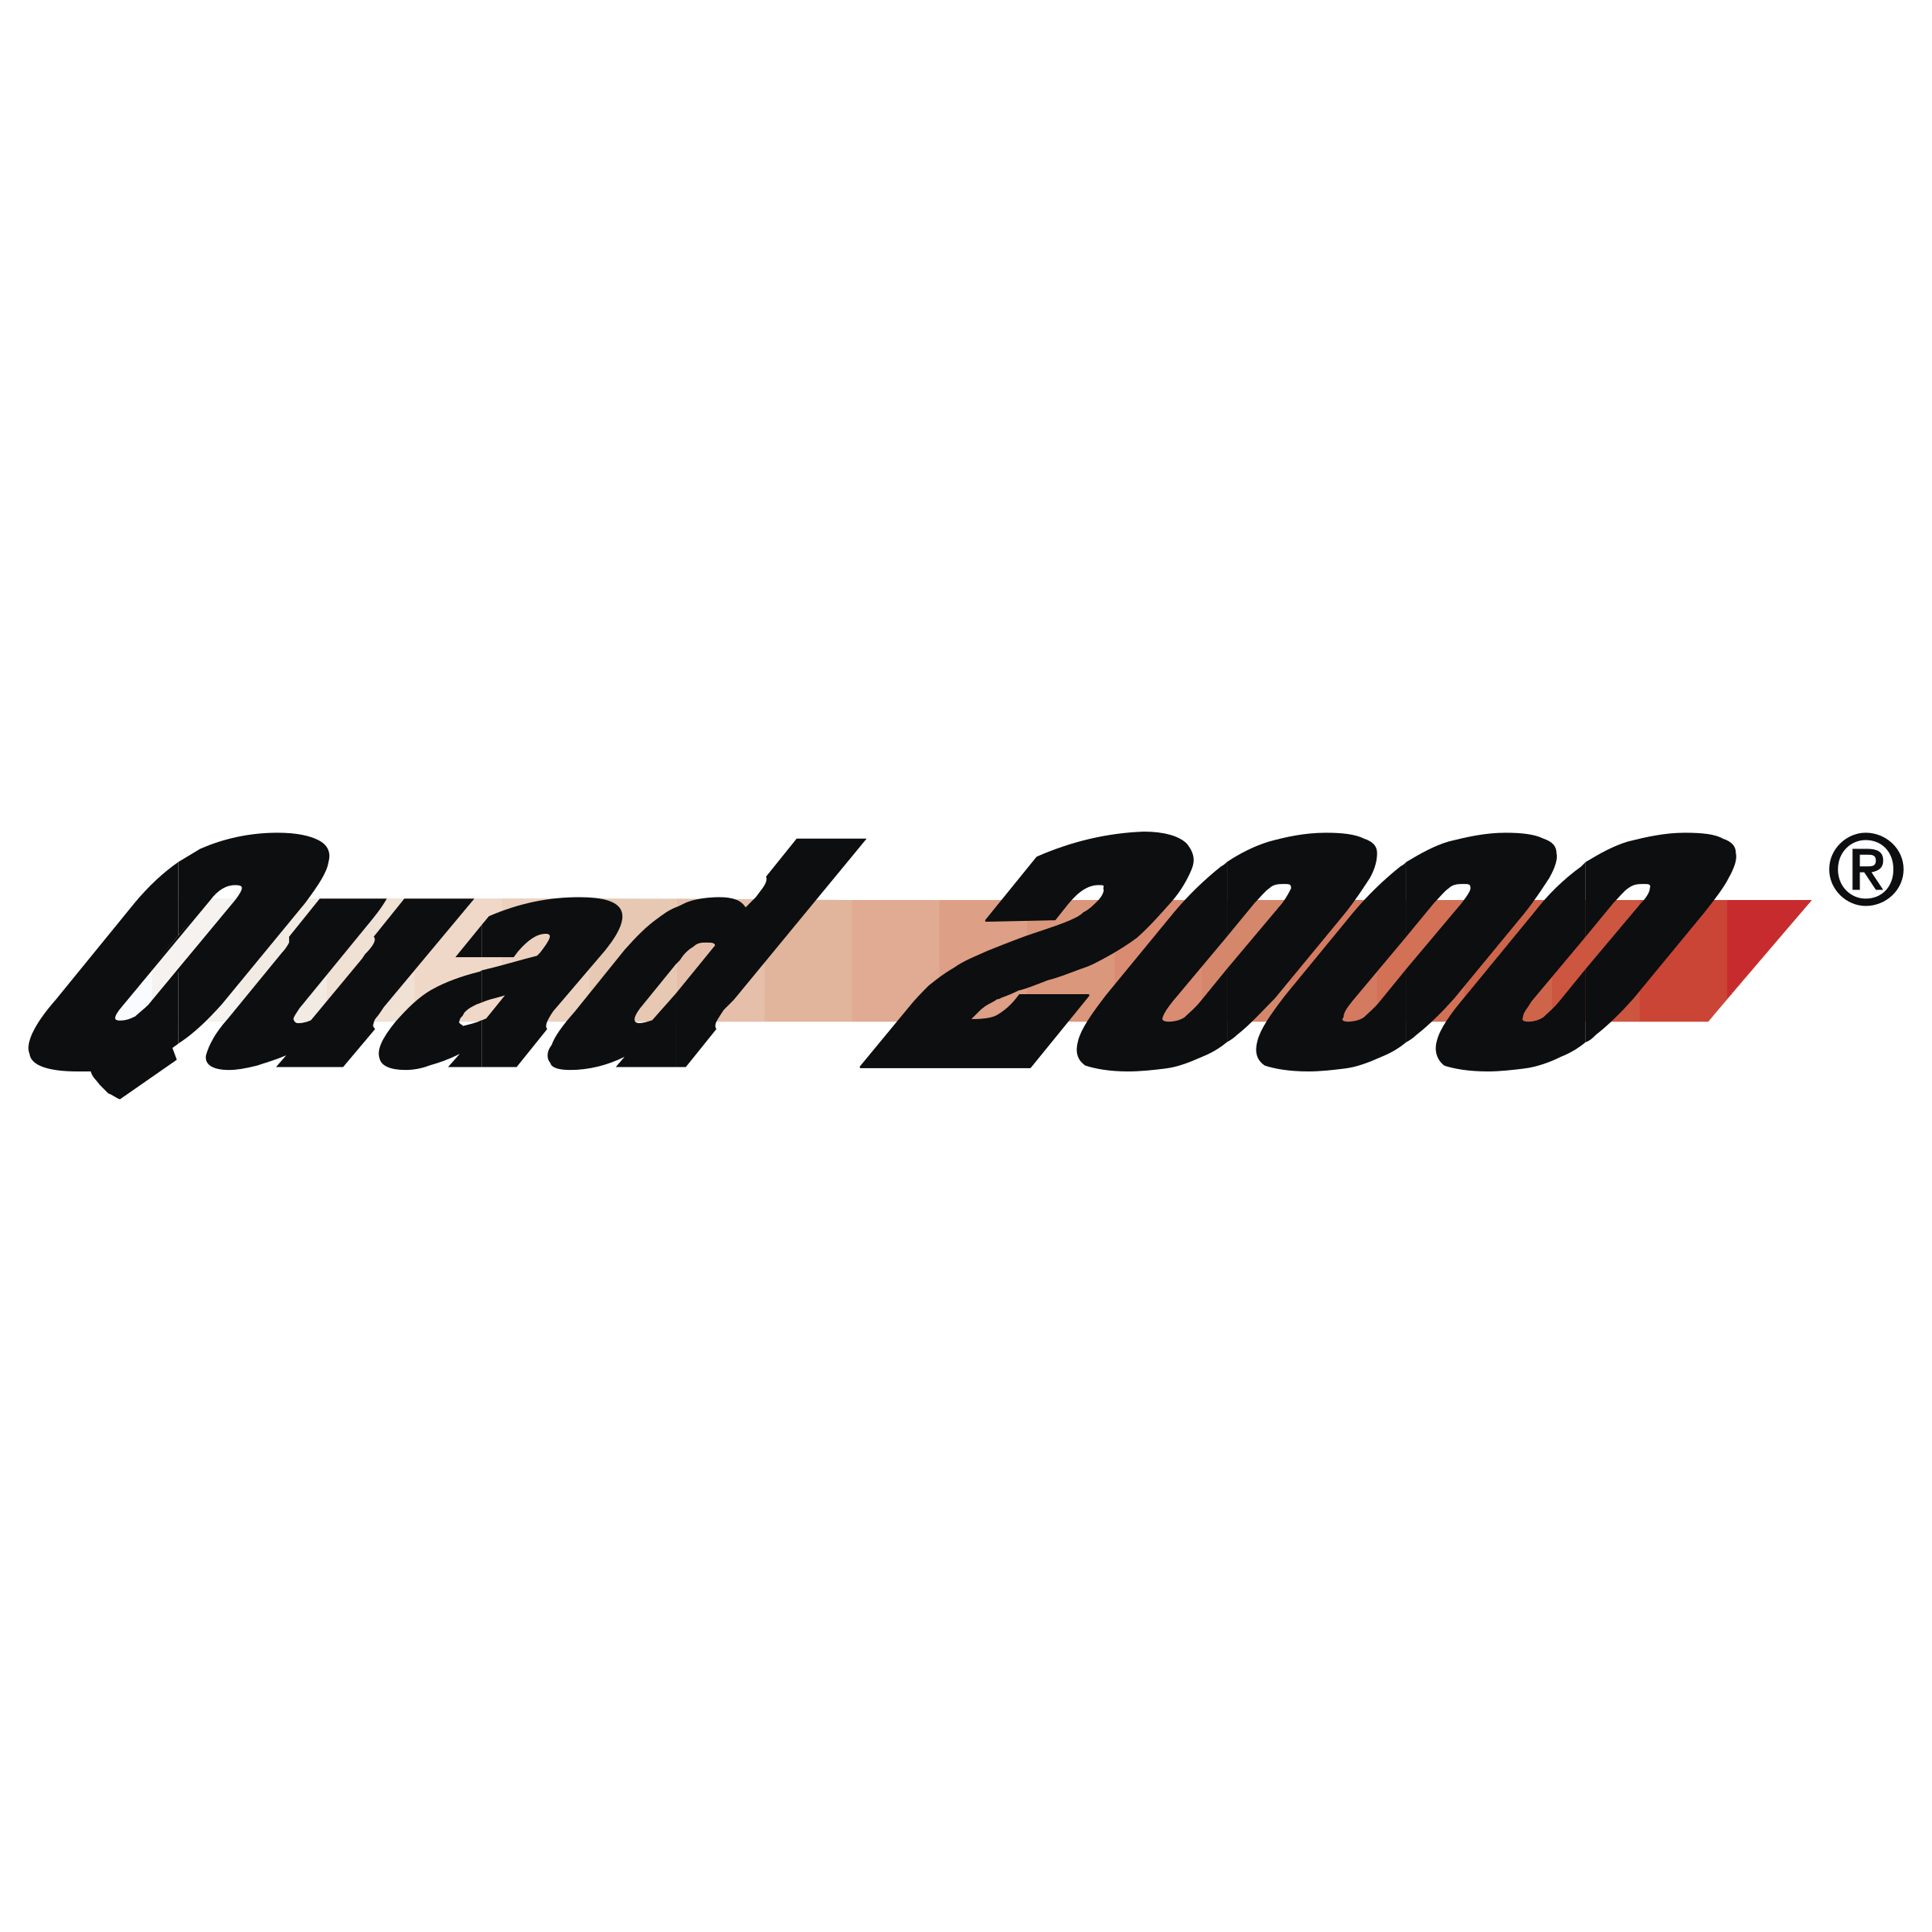 Quad Logo - Quad 2000 Logo PNG Transparent & SVG Vector - Freebie Supply